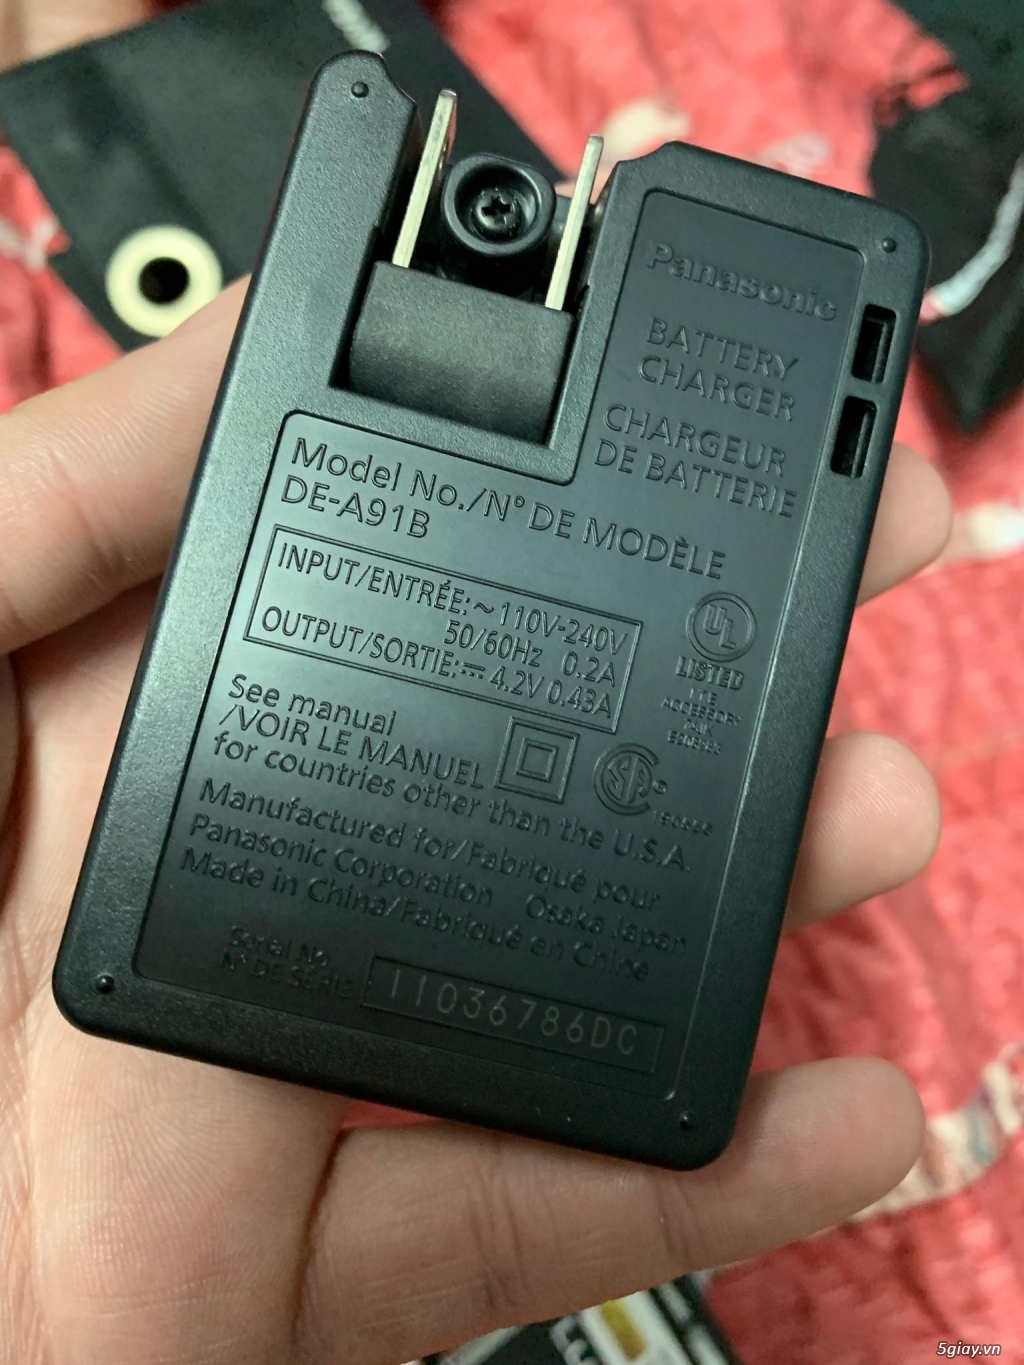 Bán Panasonic Lumix Dmc-fh25 ong kính Leica zoom8x như mới - 5